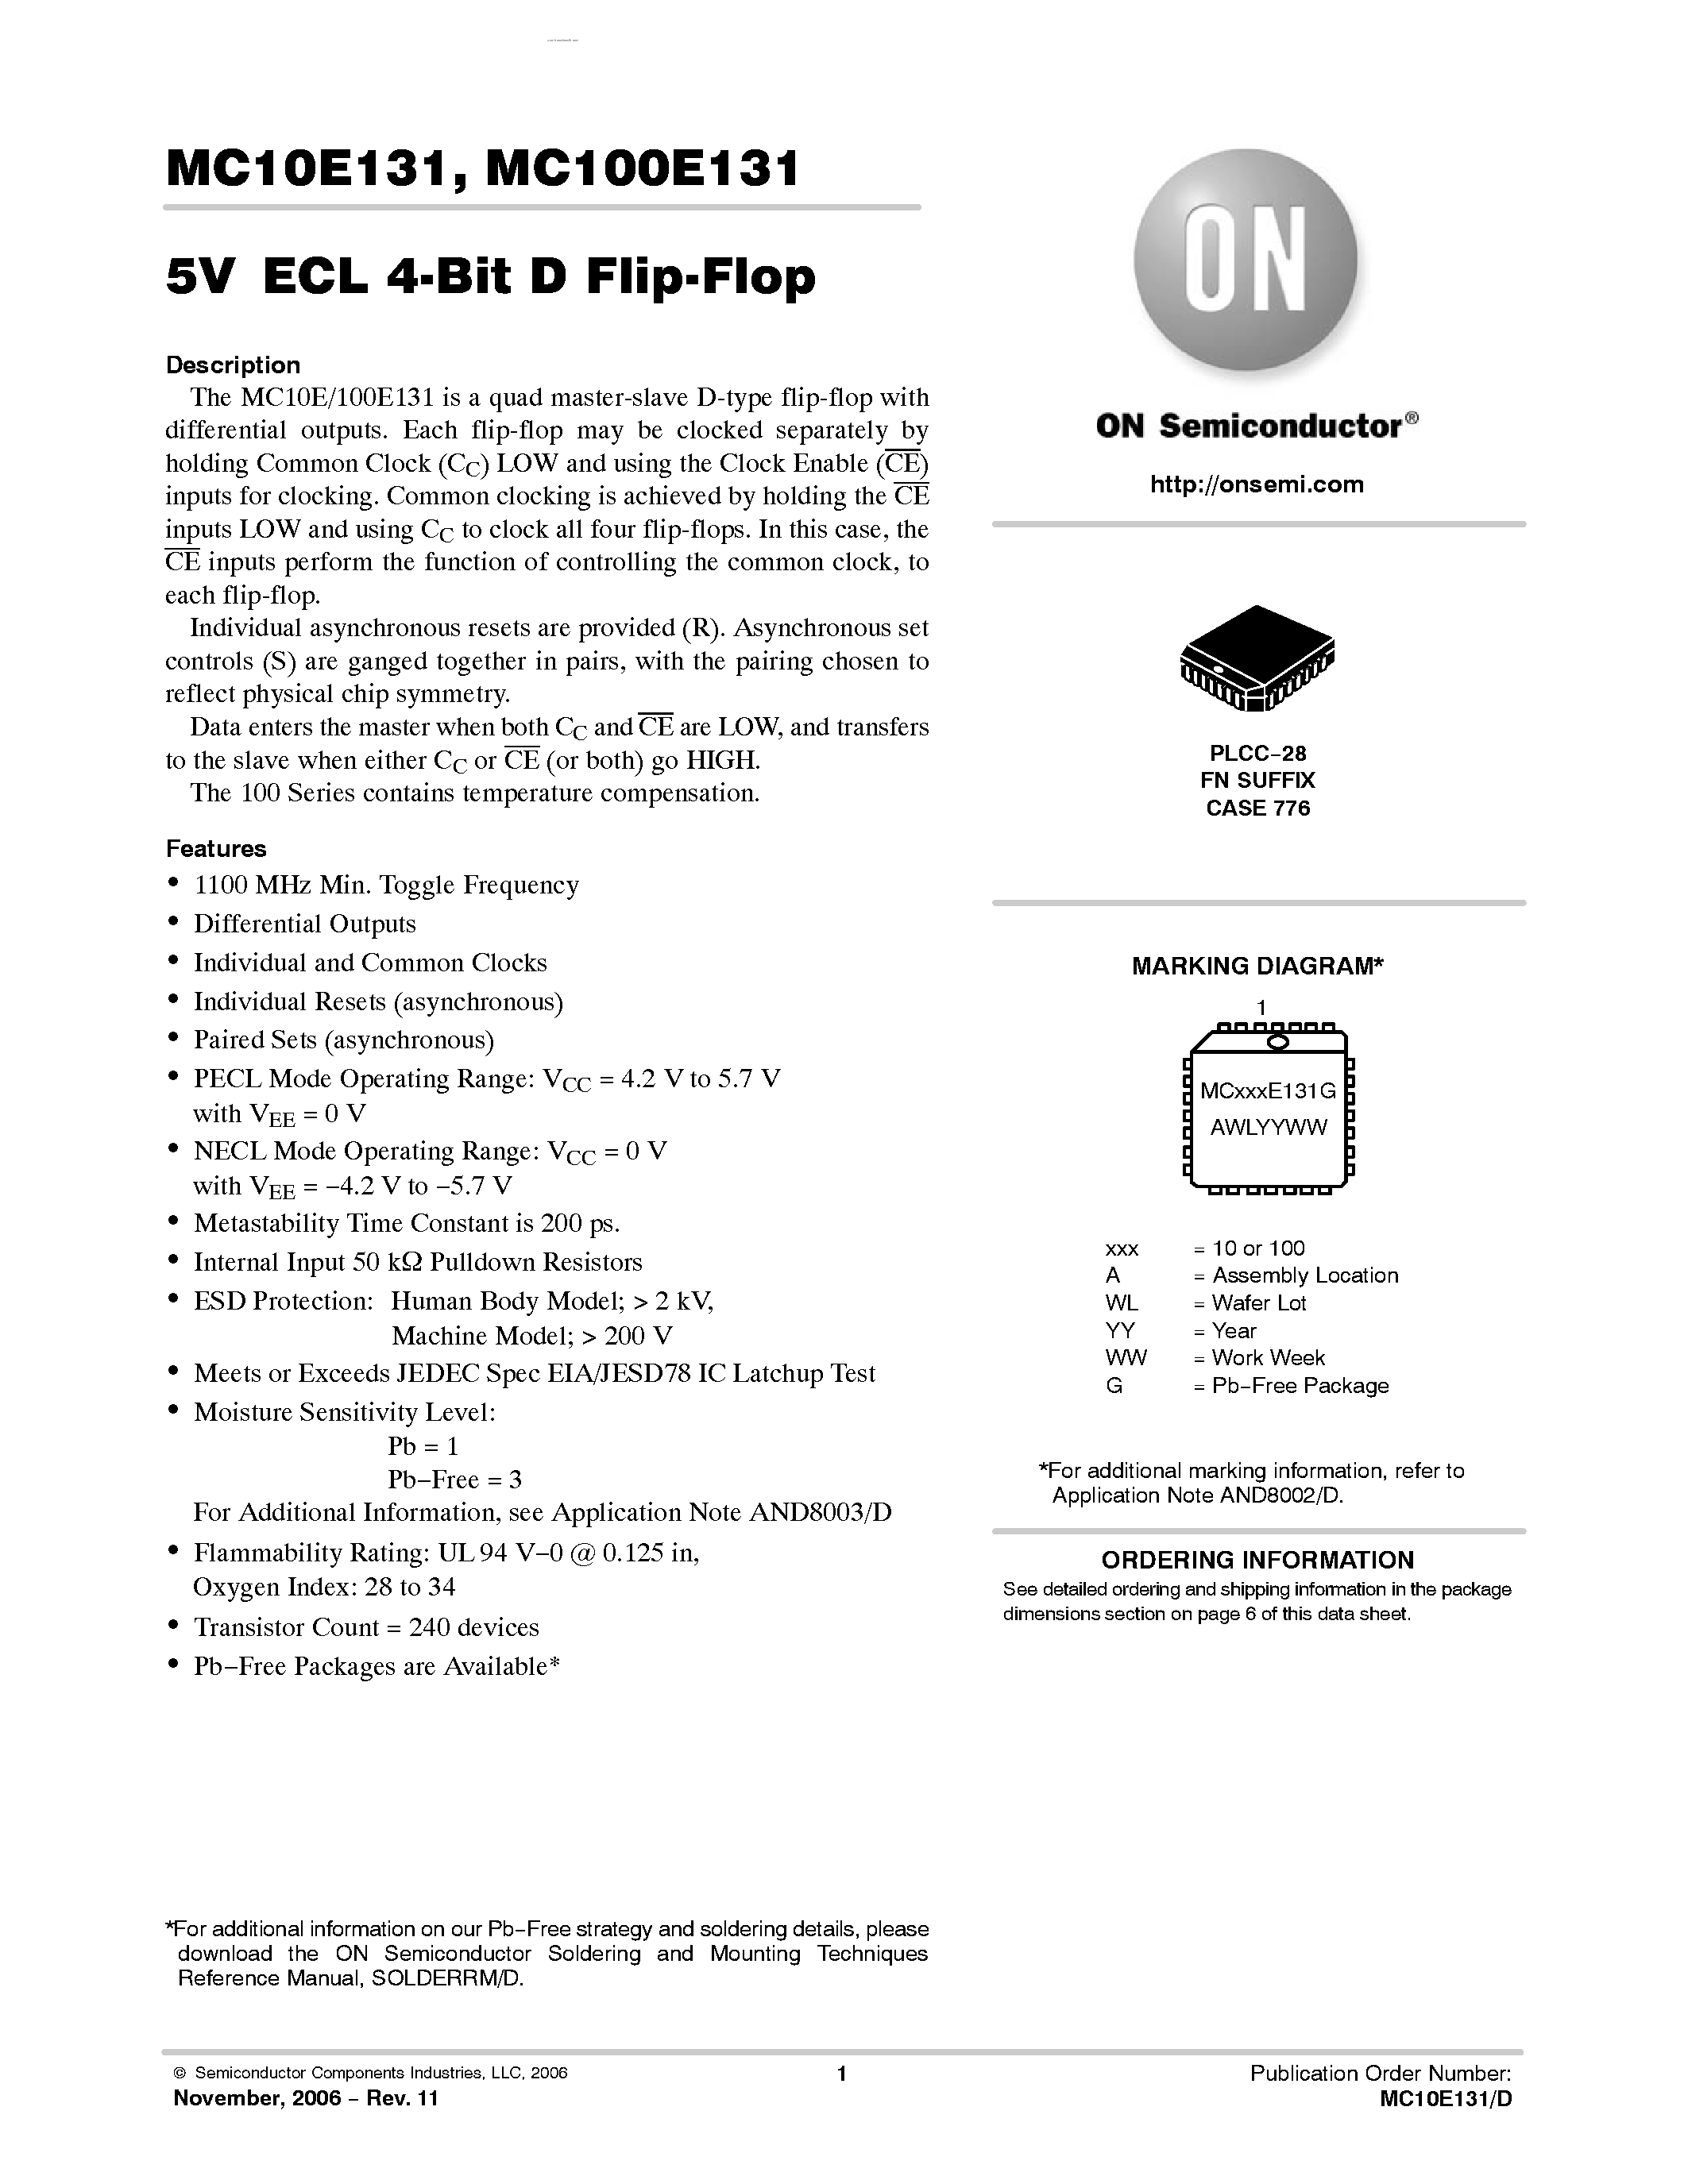 Datasheet MC100E131 - 4-BIT D FLIP-FLOP page 1